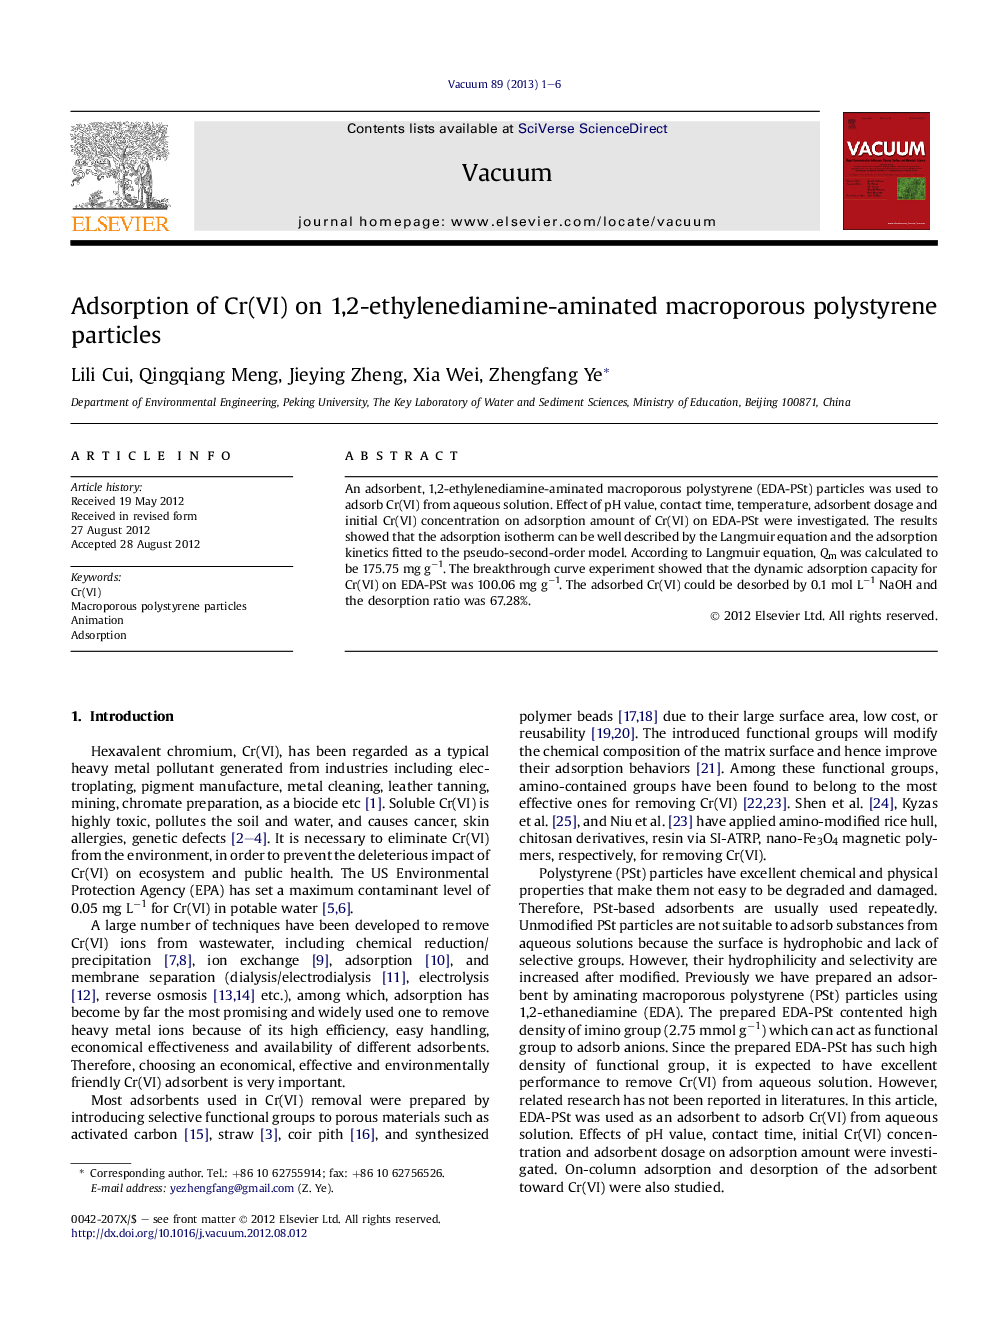 Adsorption of Cr(VI) on 1,2-ethylenediamine-aminated macroporous polystyrene particles